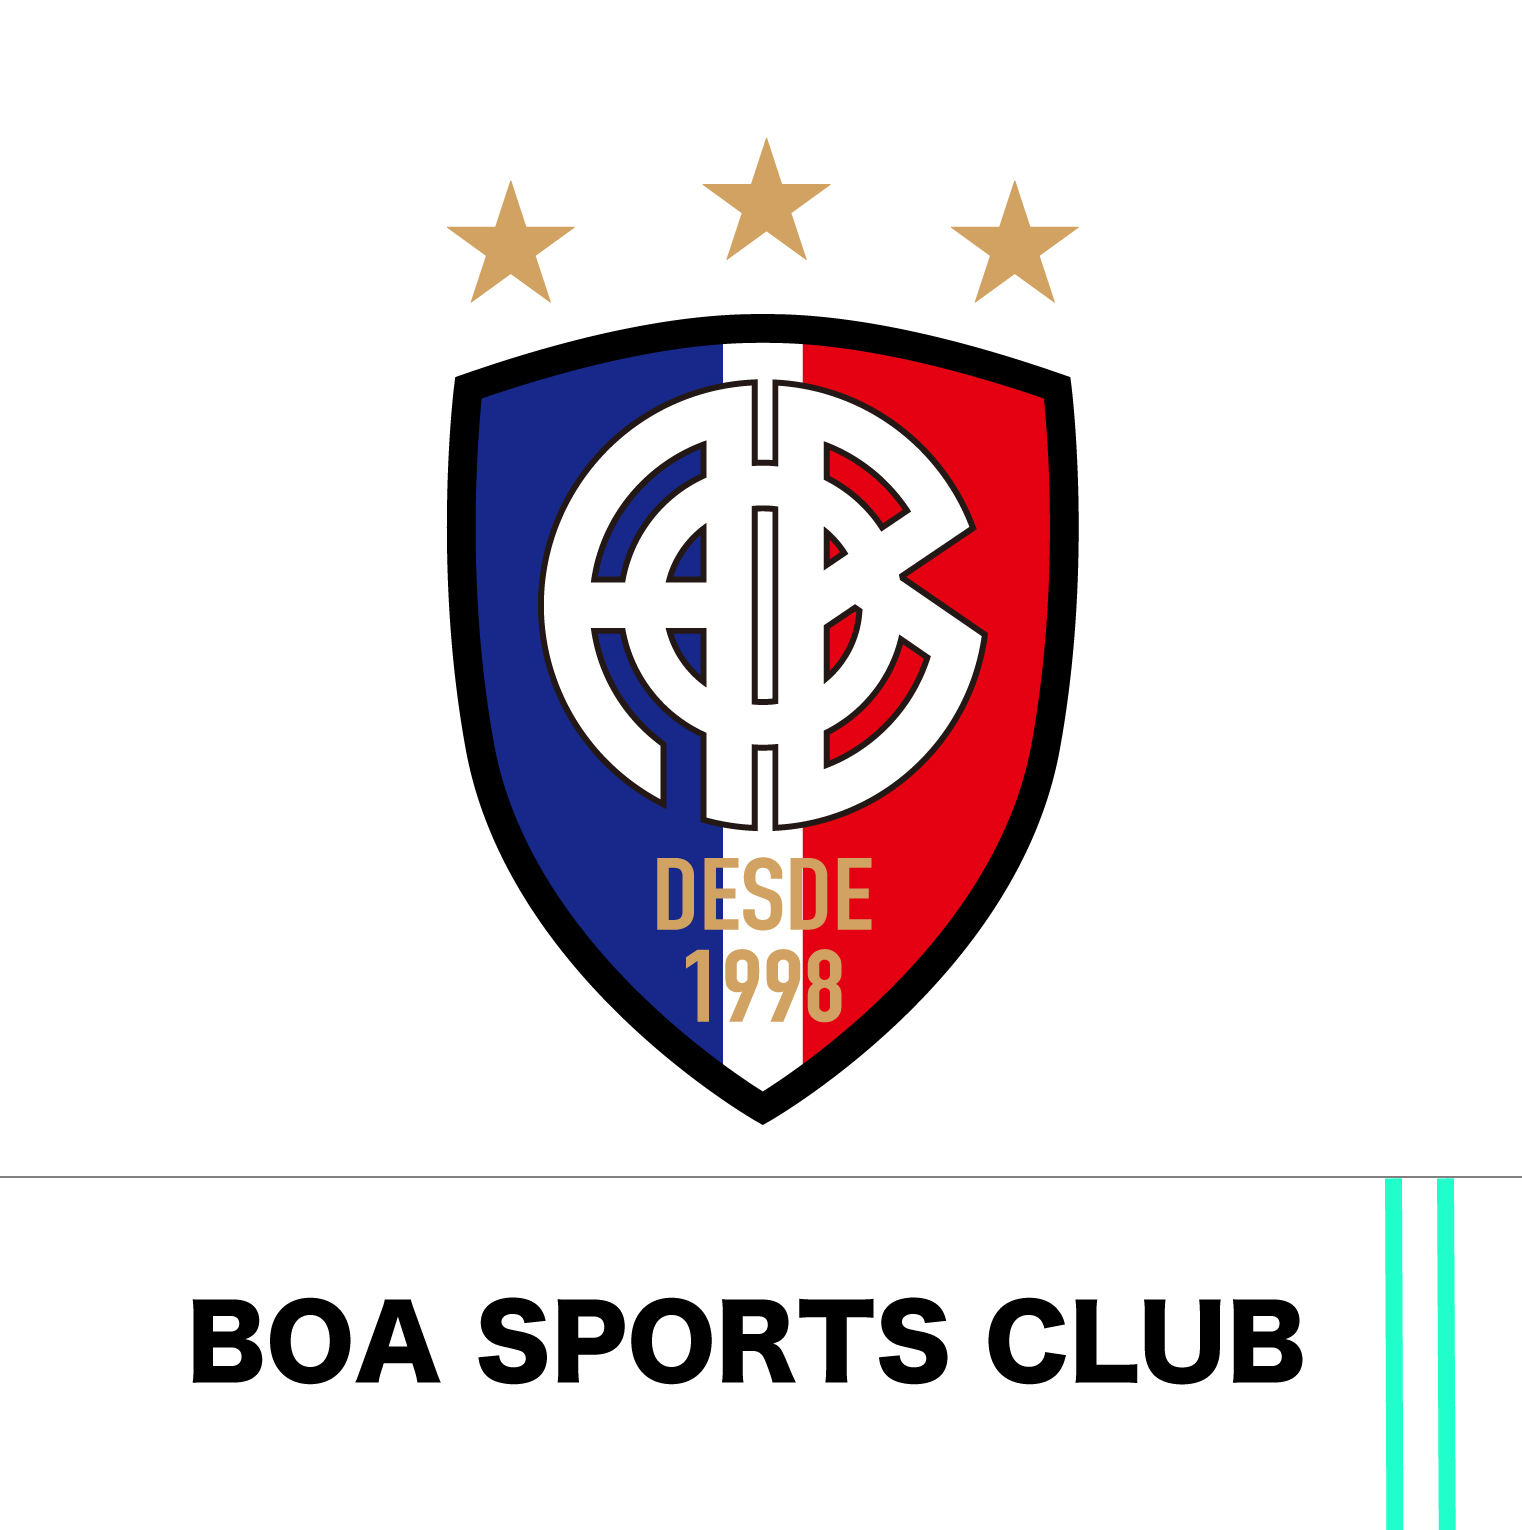 BOA SUPORTS CLUB